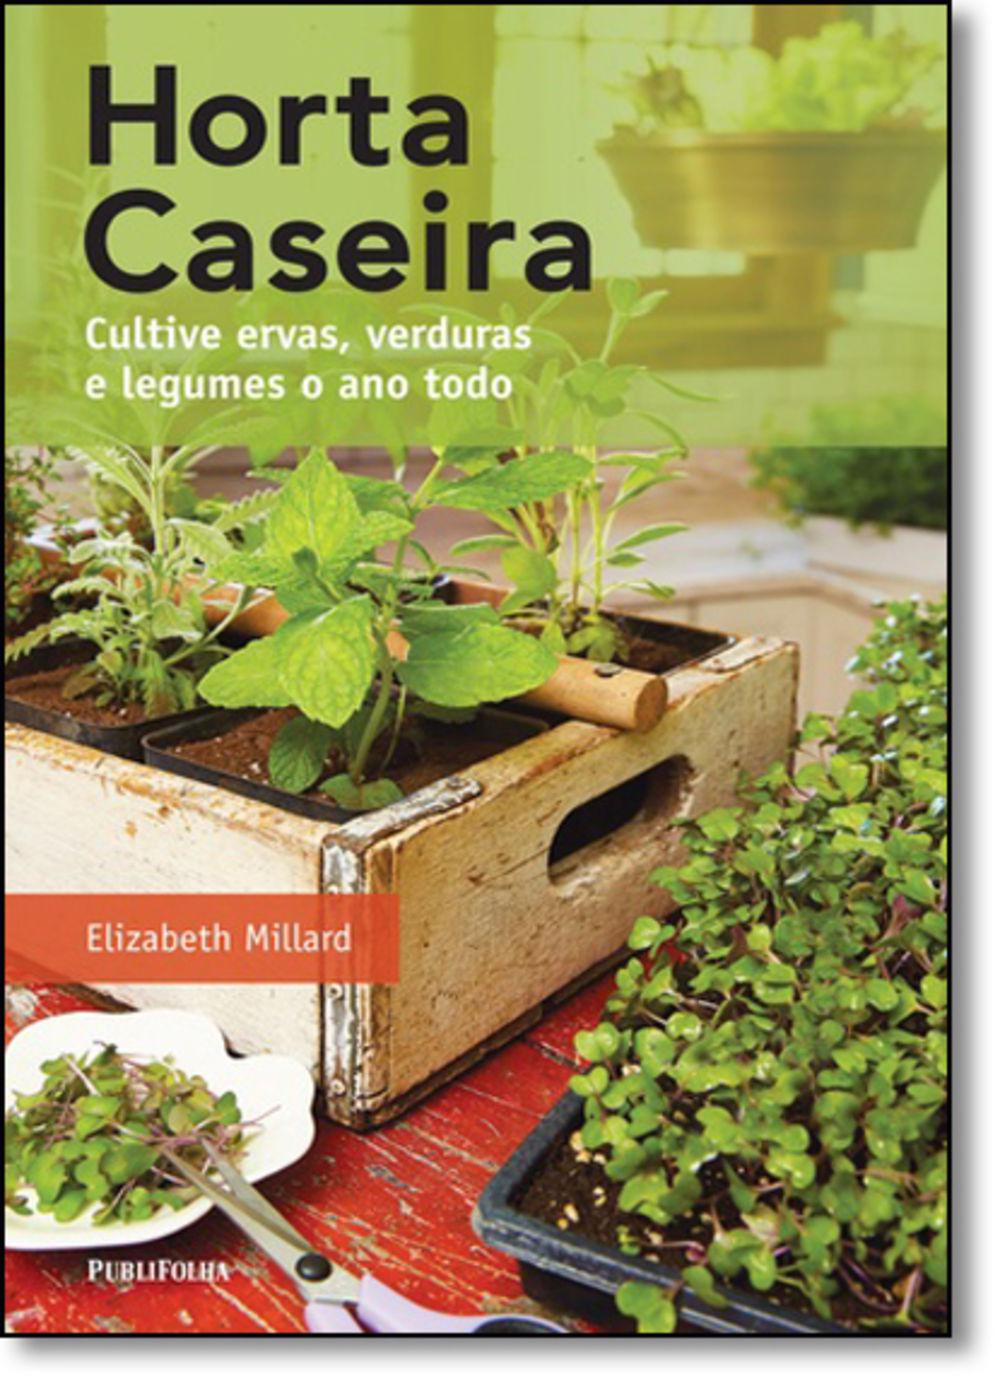 Horta Caseira: Cultive Ervas, Verduras E Legumes O Ano Todo é bom? Vale a pena?